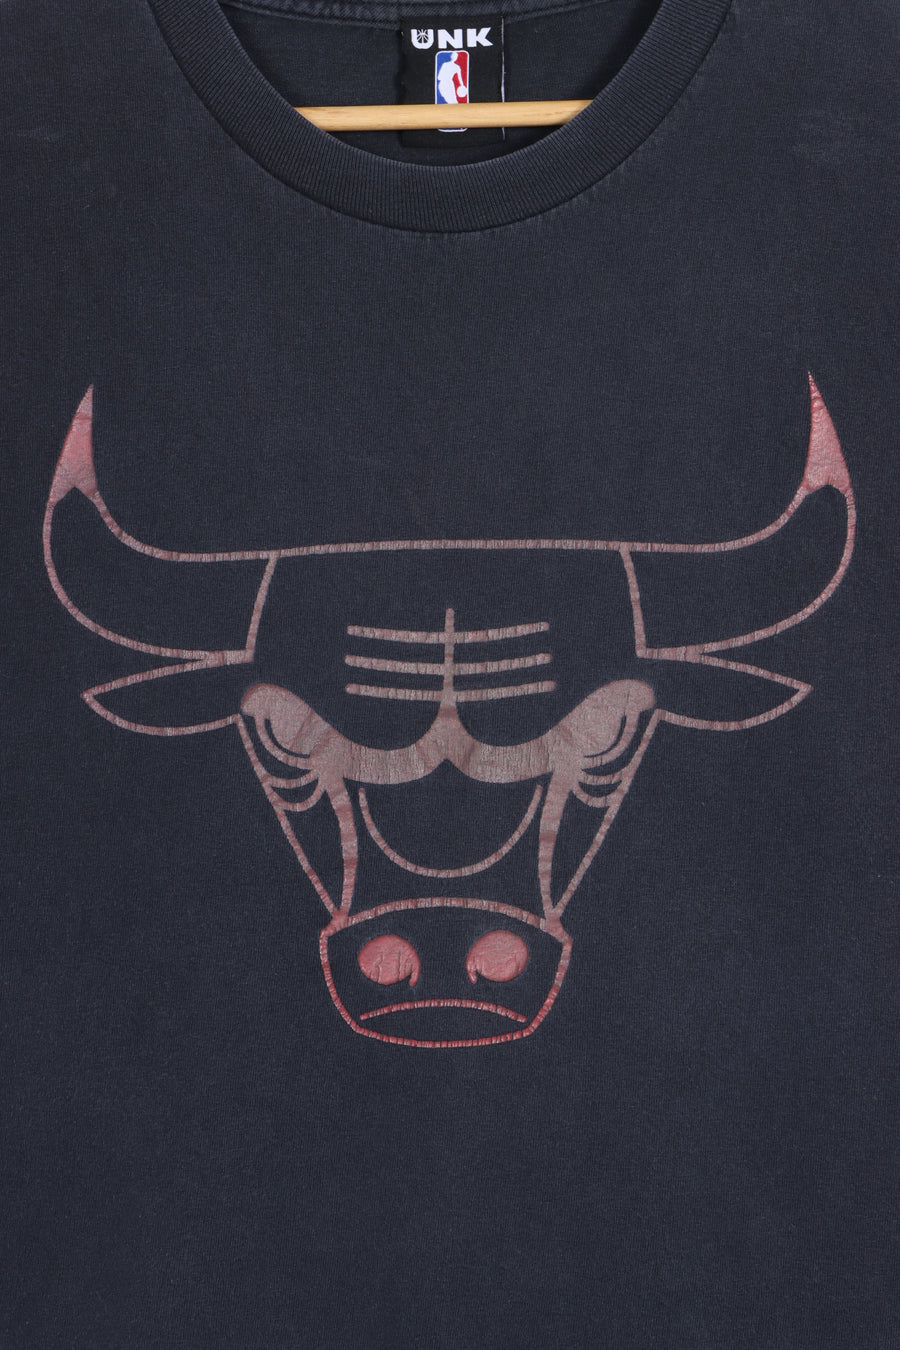 NBA Chicago Bulls Big Logo UNK T-Shirt (L)